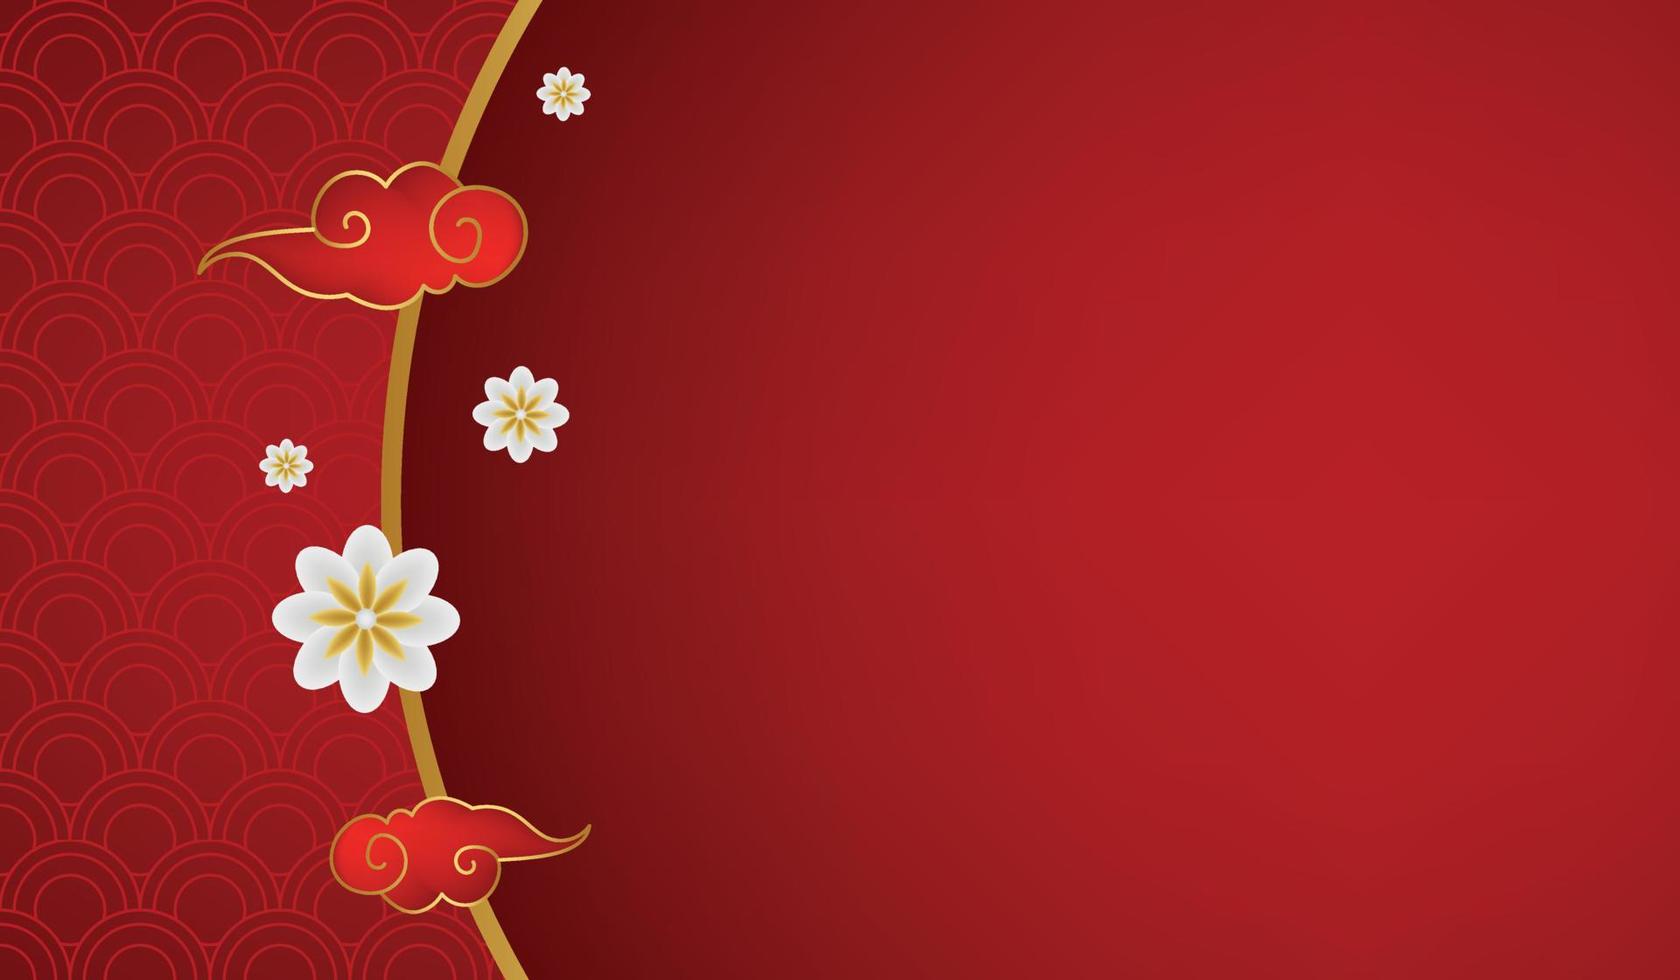 Những hoa văn tuyệt đẹp của tết Trung Quốc sẽ đem lại không khí Xuân tràn đầy và niềm vui tràn đầy tại gia. Cùng chiêm ngưỡng những hình ảnh đậm chất Trung Hoa và truyền thống trong bộ sưu tập hoa văn tết của chúng tôi. 